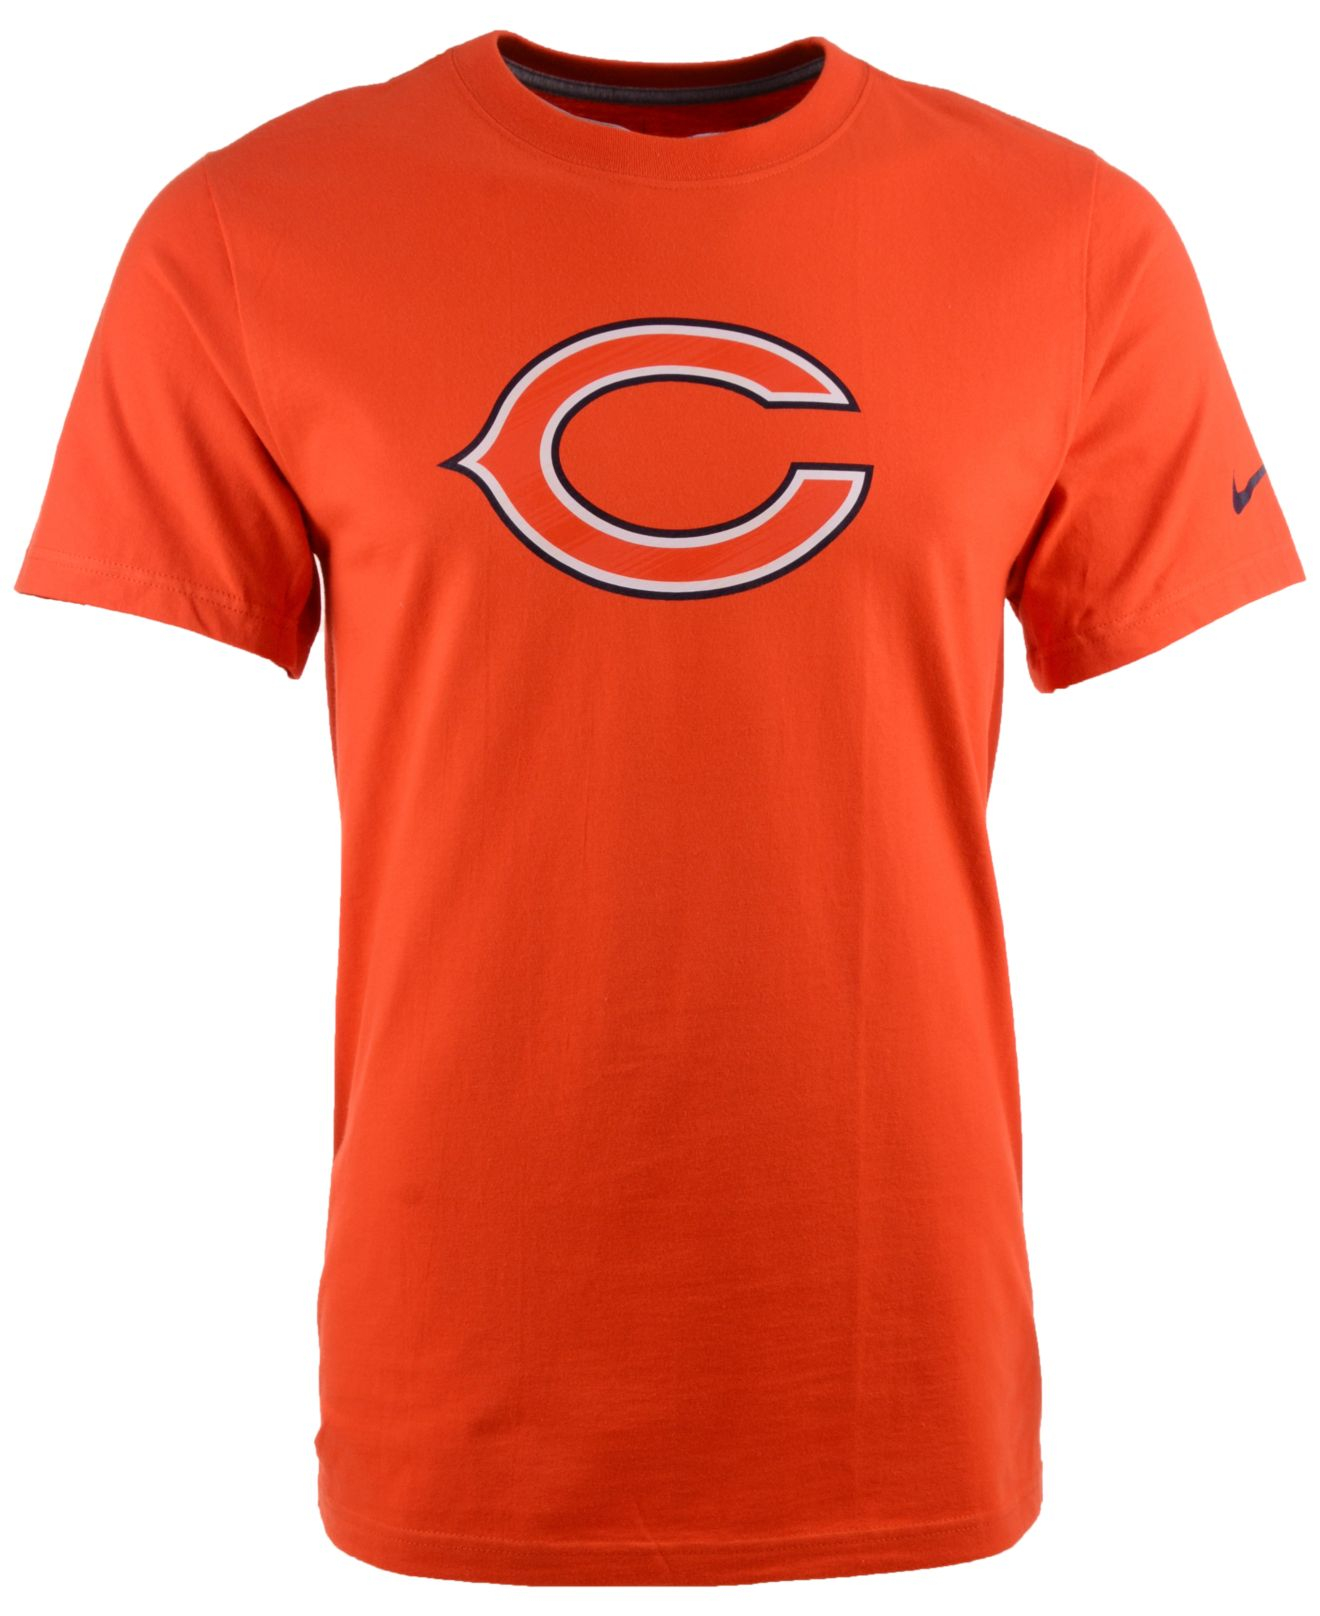 Lyst - Nike Men's Short-sleeve Chicago Bears Fast Logo T-shirt in ...